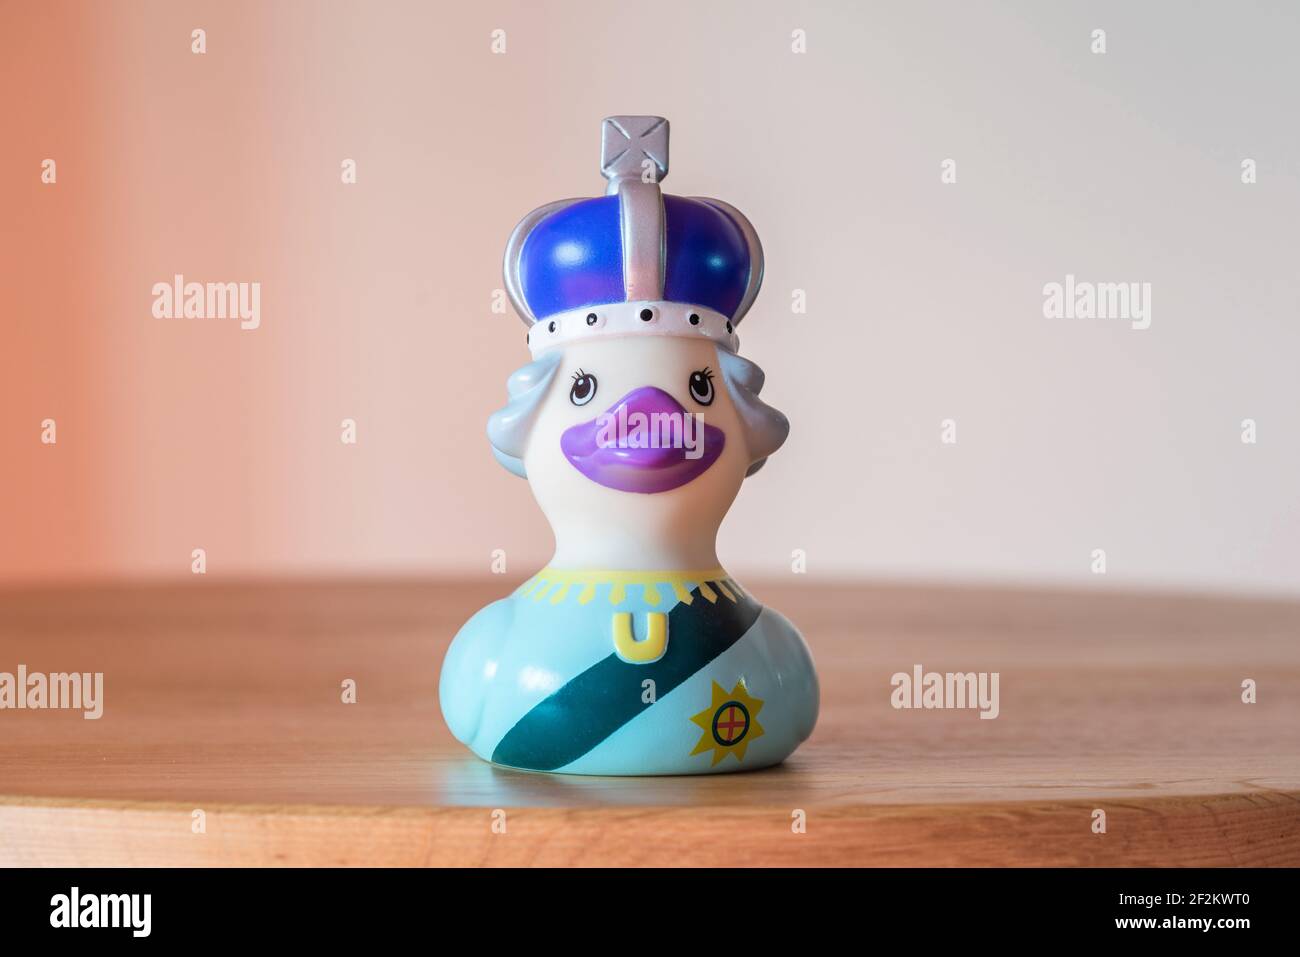 Queen rubber duck joke toy Stock Photo